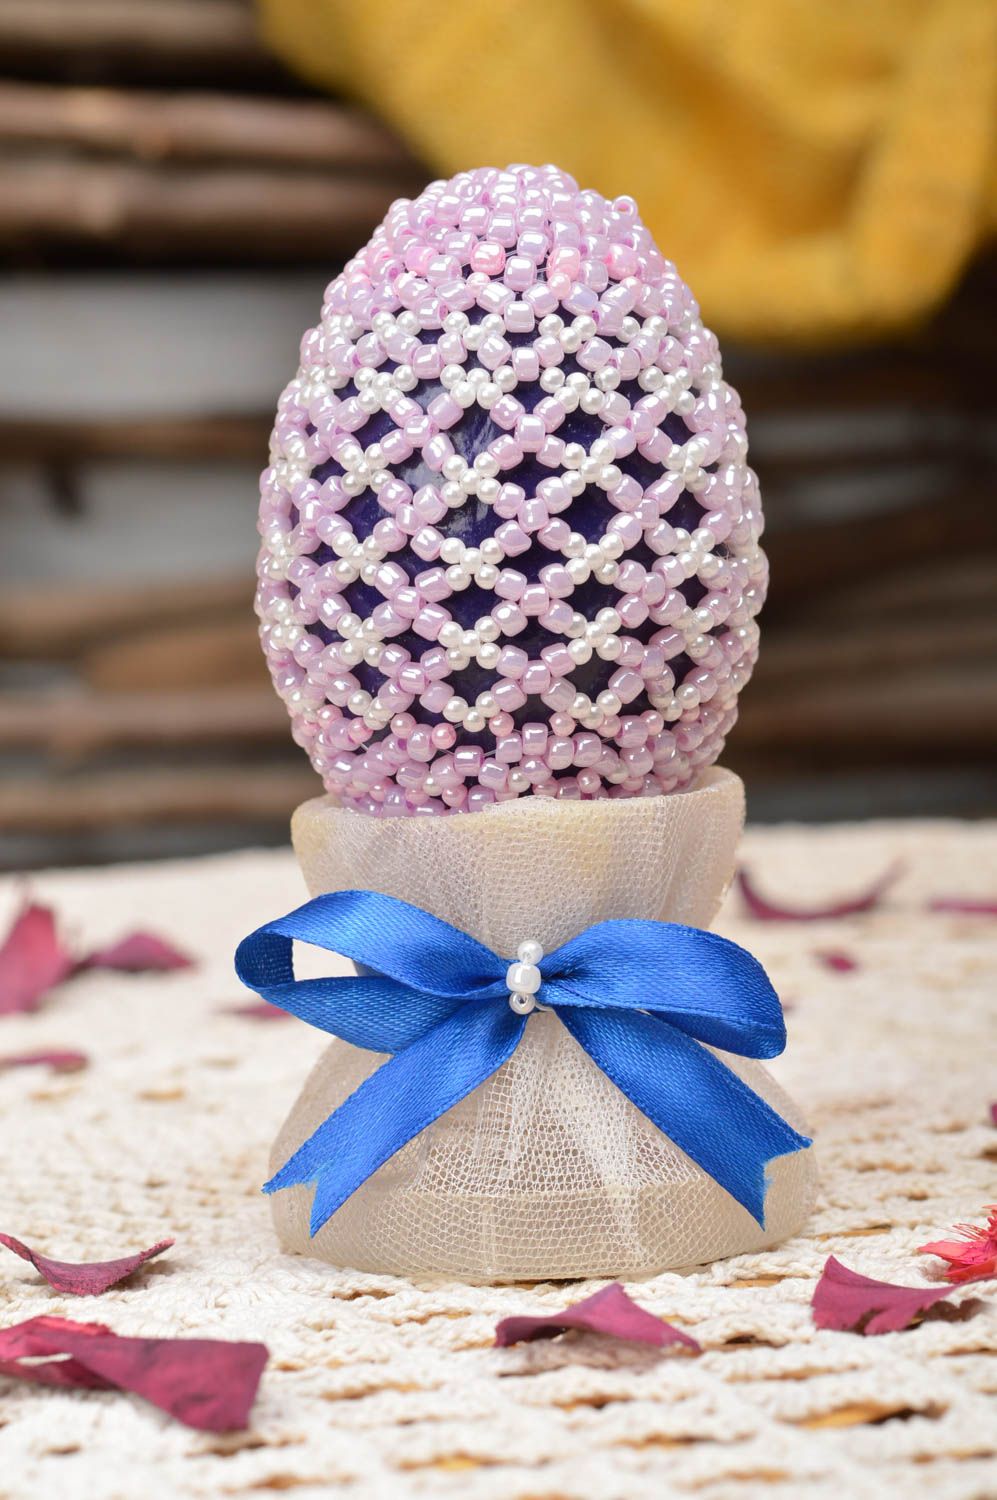 Яйцо из папье-маше оплетенное розовым бисером красивый пасхальный декор хэндмэйд фото 1